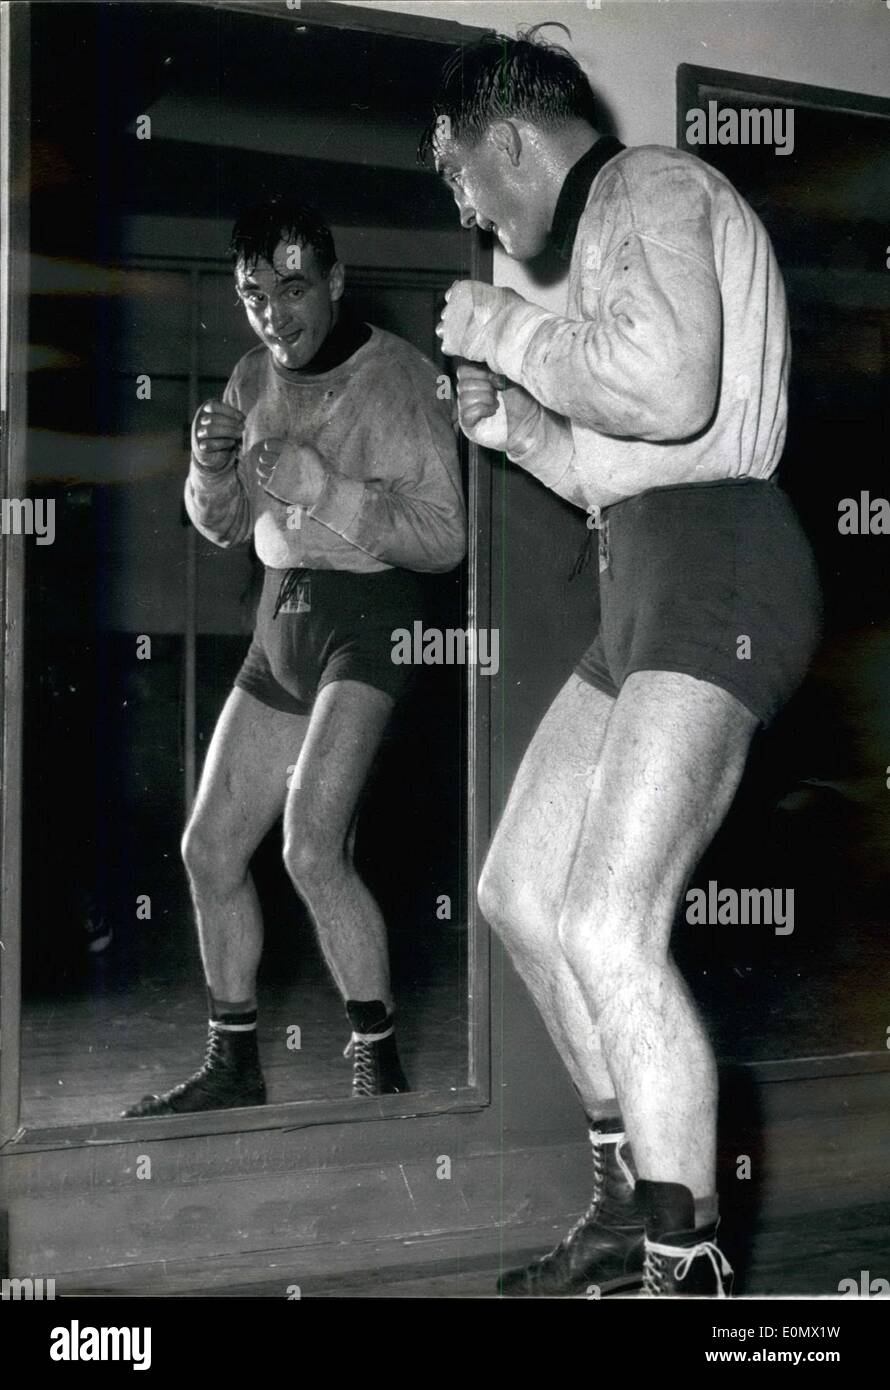 Ottobre 10, 1956 - Boxer francese Charles Humez è combattere il pugile italiano Fernucci a Milano il prossimo sabato. Il titolo non sarà Foto Stock